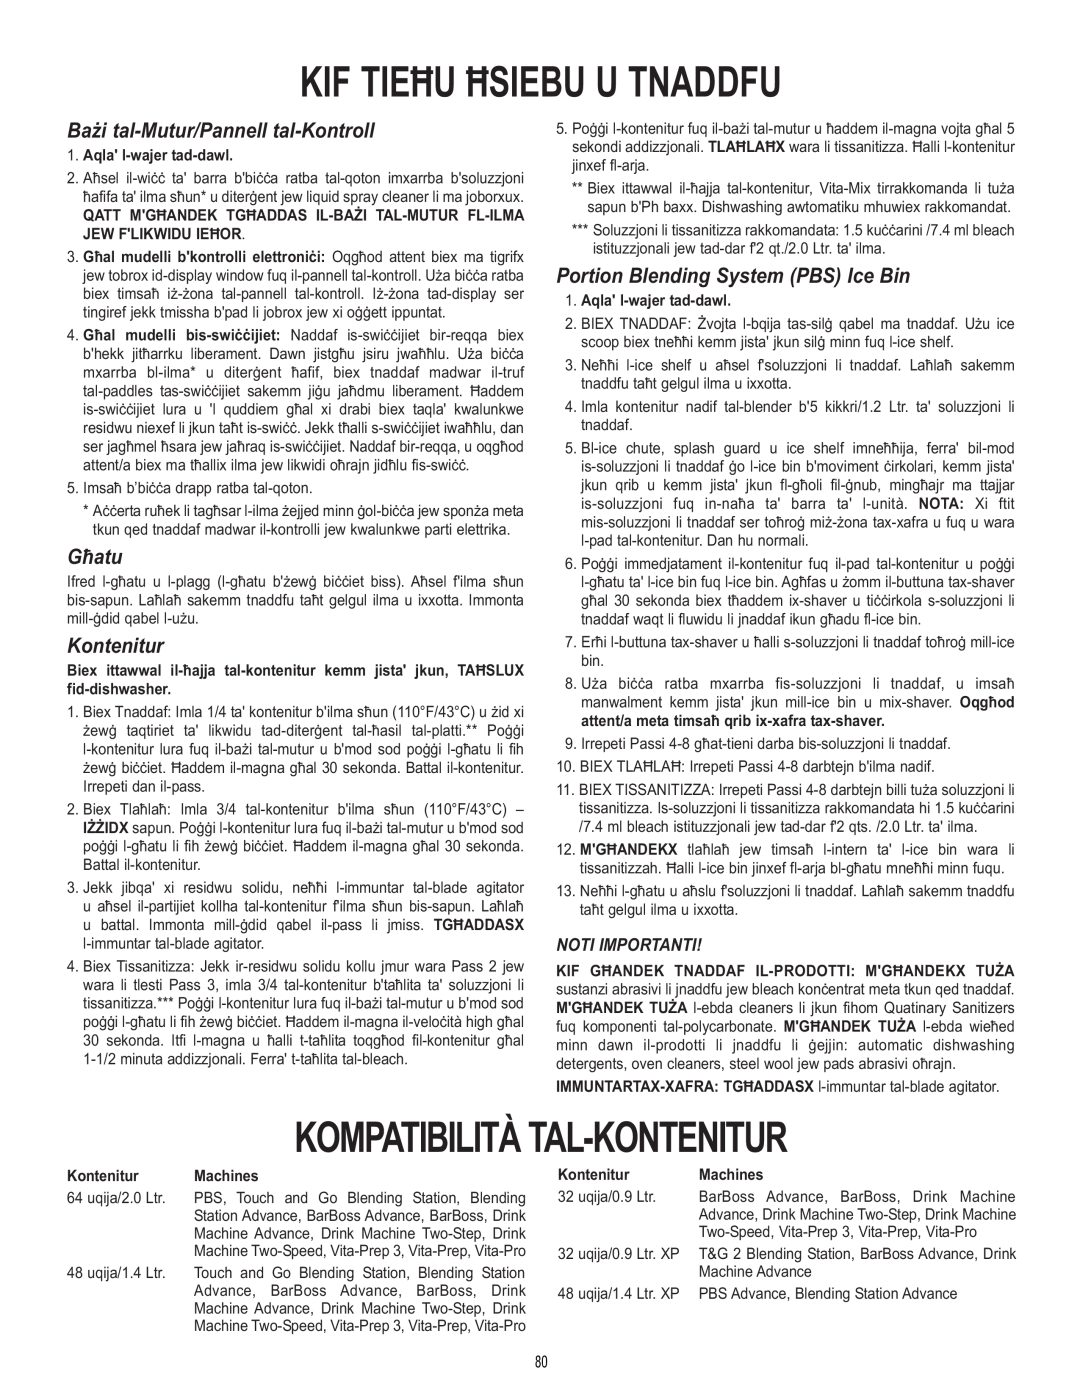 Vita-Mix 101807 manual Kif Tieħu Ħsiebu U Tnaddfu, Kompatibilità Tal-Kontenitur, Bażi tal-Mutur/Pannell tal-Kontroll, Għatu 